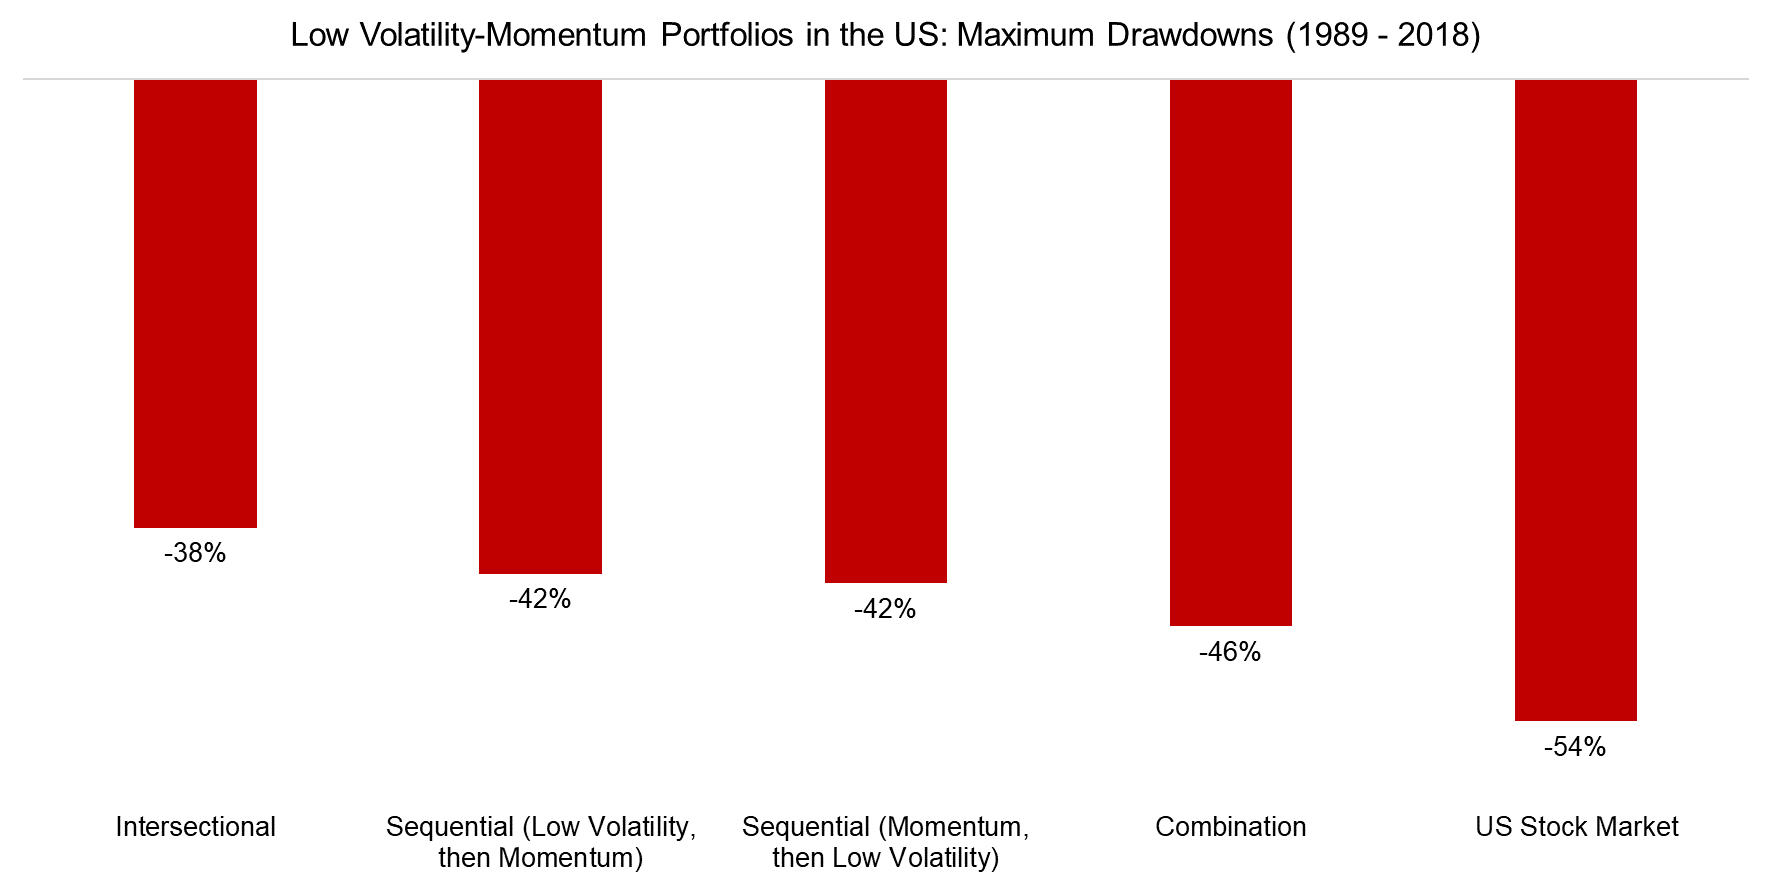 Low Volatility-Momentum Portfolios in the US Maximum Drawdowns (1989 - 2018)